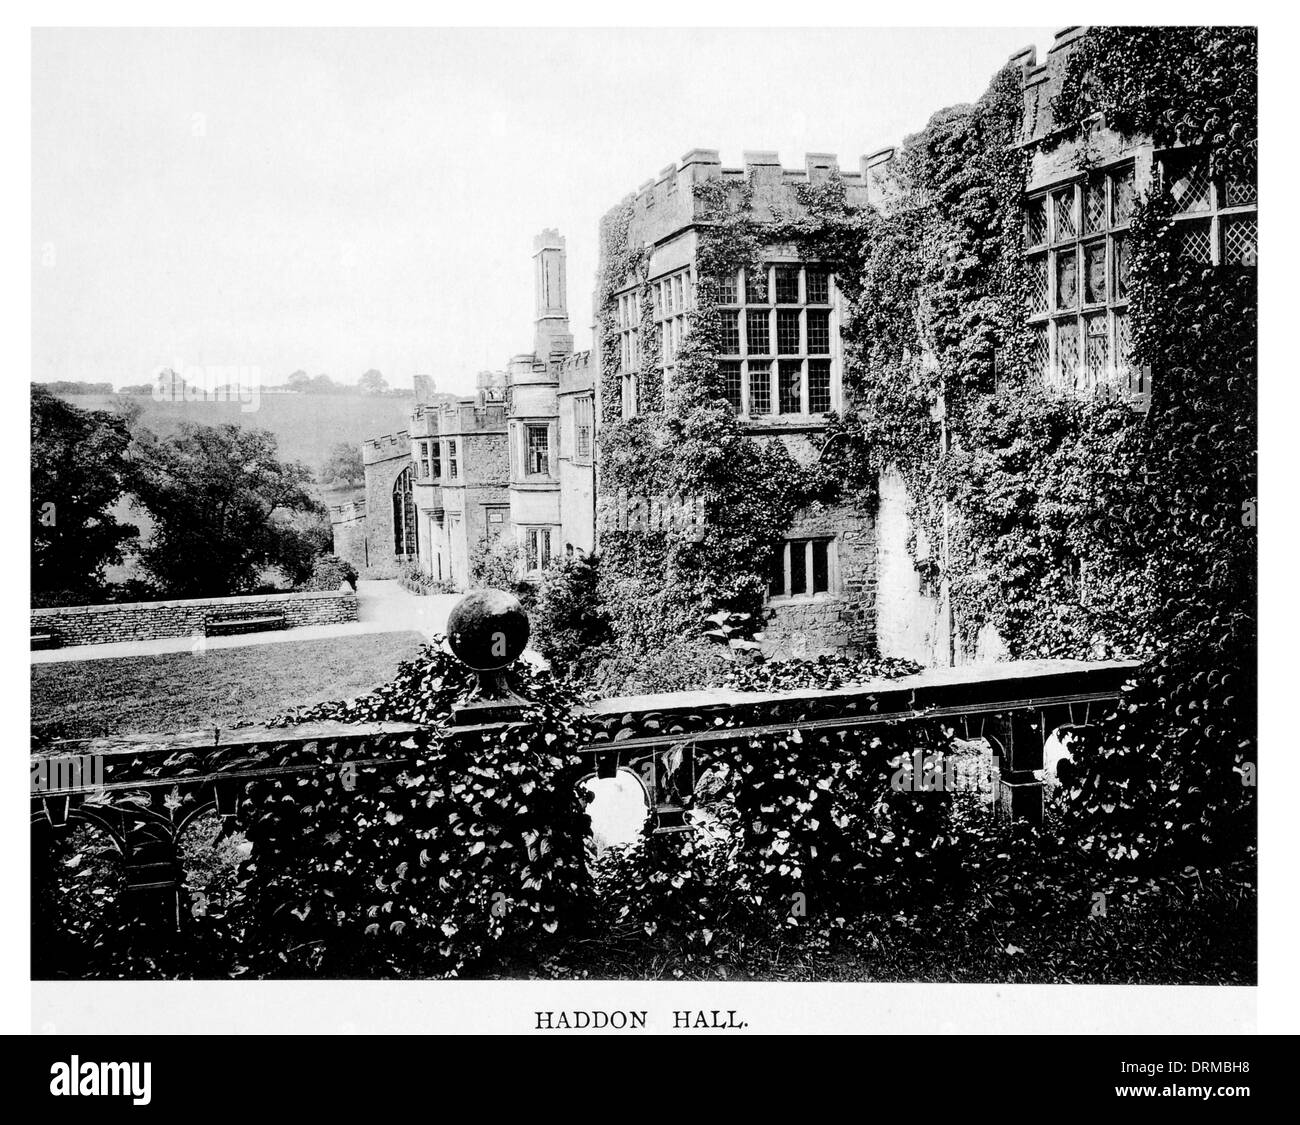 Terrasse Haddon Hall Gärten Treppe Rasen Stein Lord Edward Manieren Bakewell Derbyshire fotografiert Circa 1910 Stockfoto